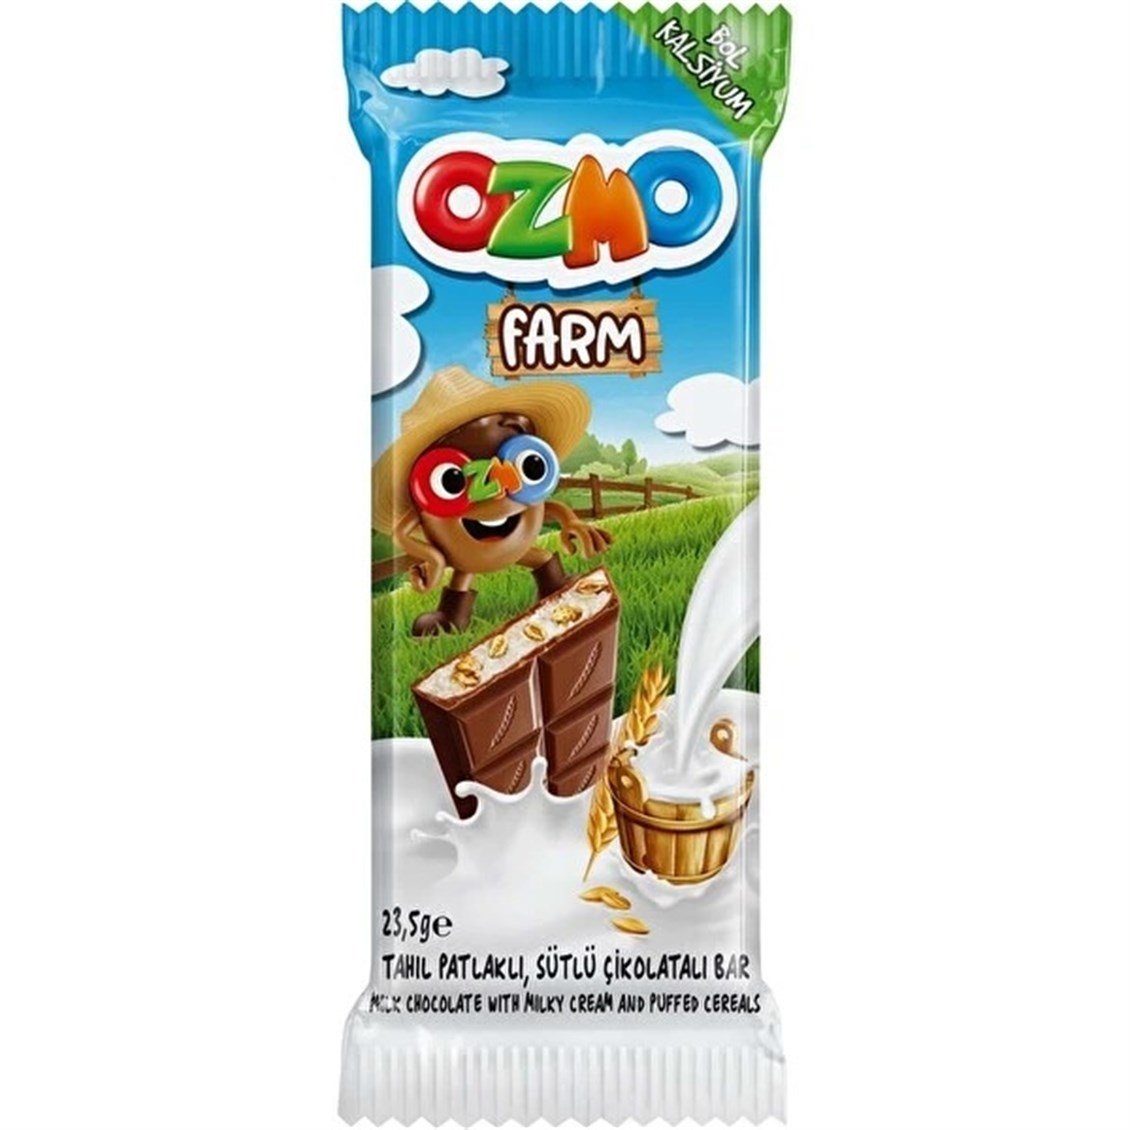 Şölen Ozmo Farm Tahıl Patlaklı Çikolata 23,5 gr